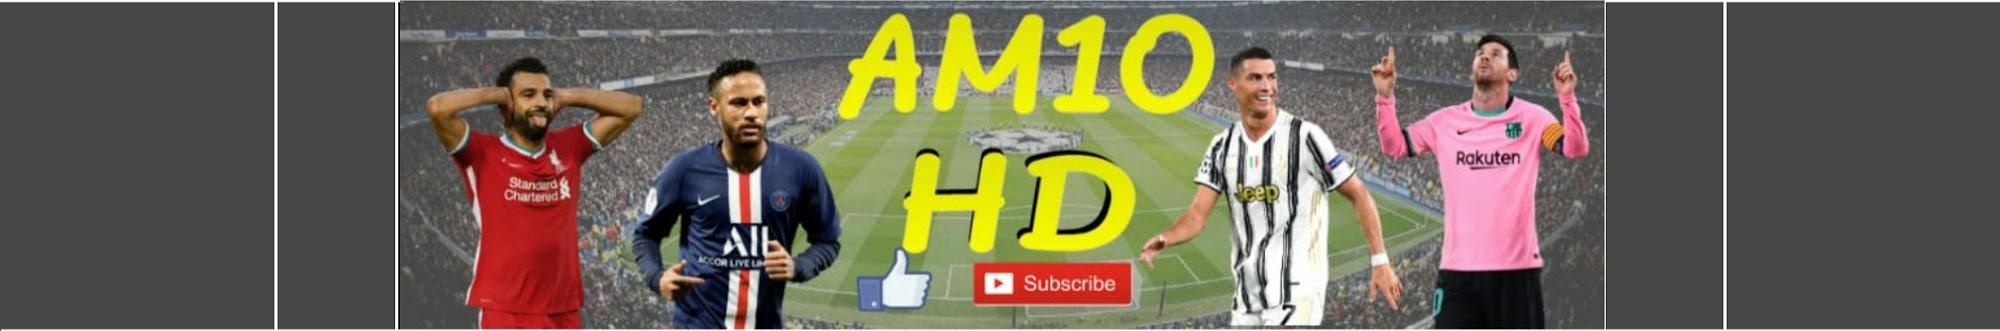 AM10 HD